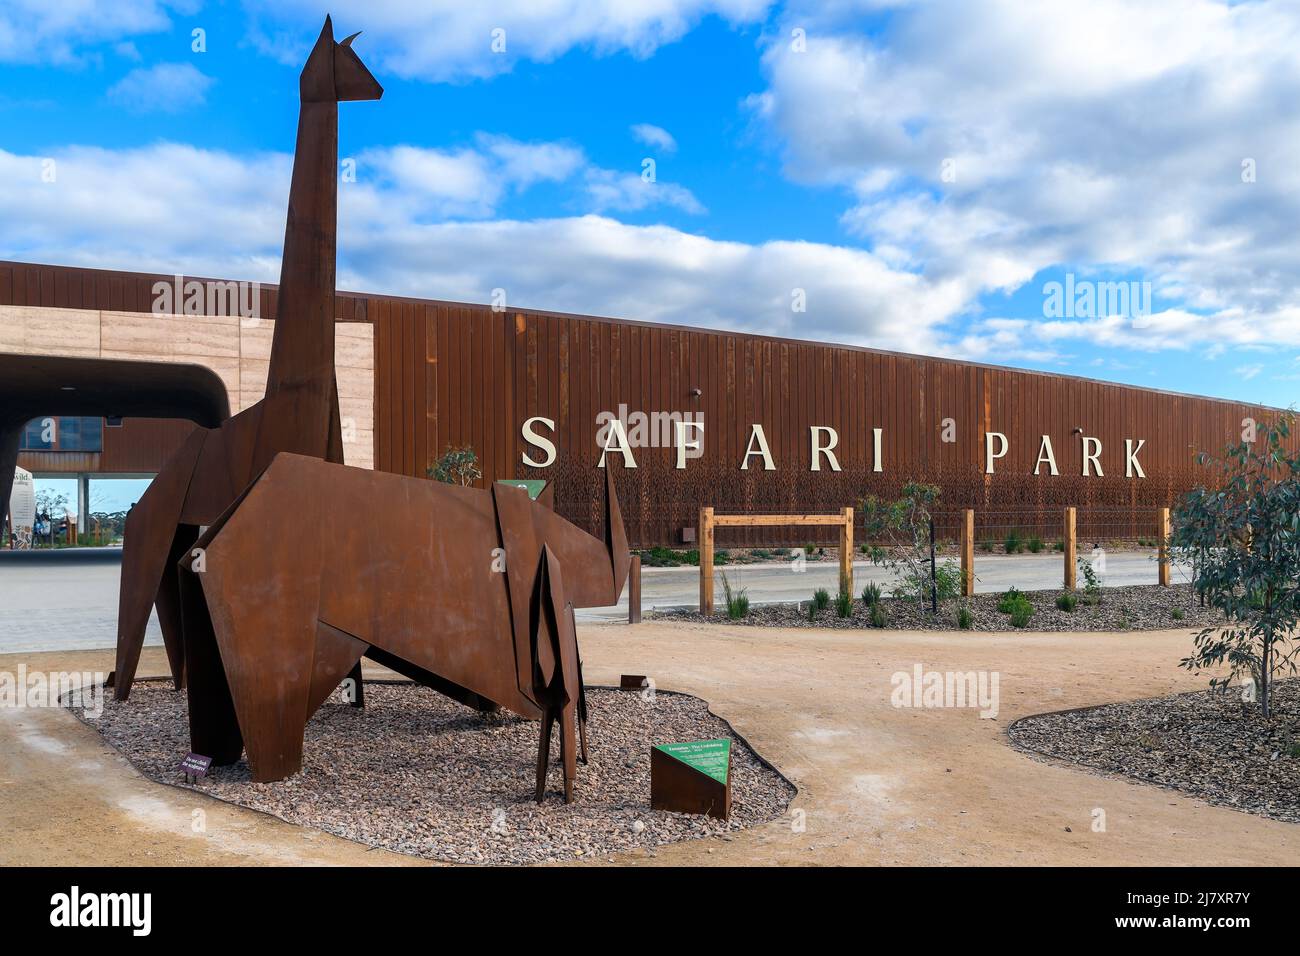 Adélaïde, Australie méridionale - 8 mai 2022 : nouvelle entrée du parc de safari Monarto avec sculptures en métal vues depuis le parking pendant une journée Banque D'Images